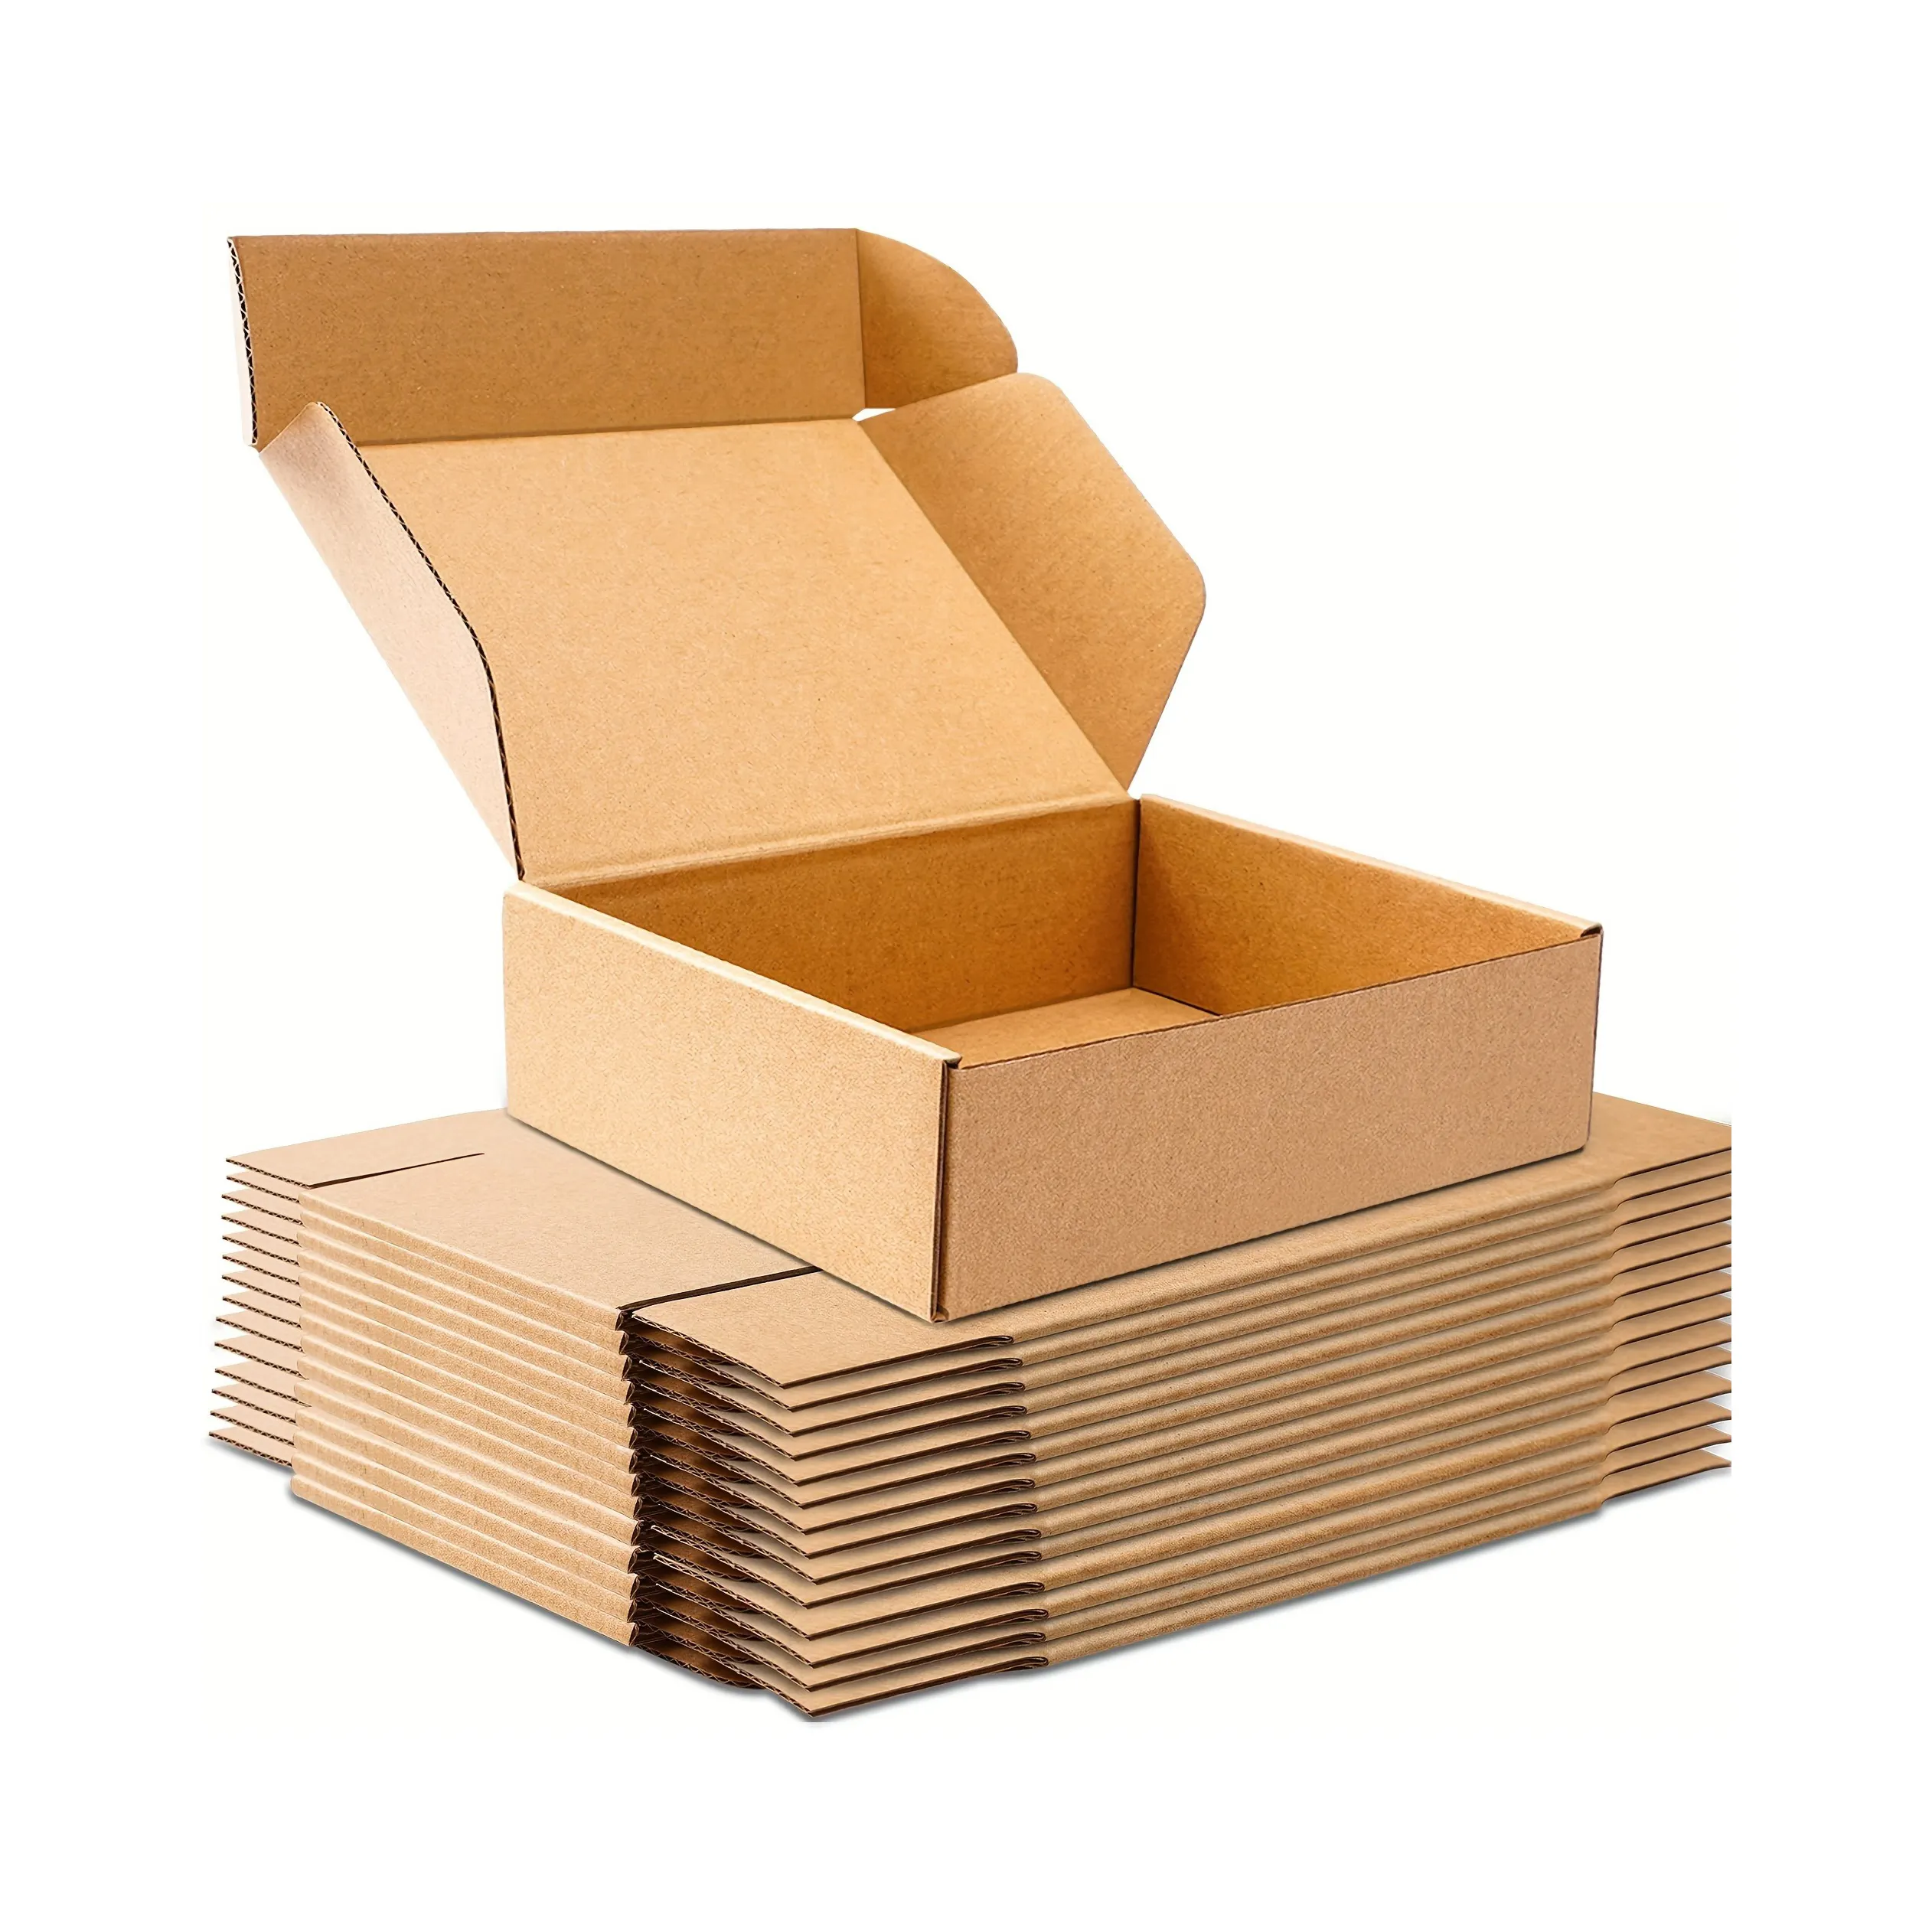 Fabricant carton de papier recyclable avec logo personnalisé Emballage postal imprimé en mouvement Boîte en carton ondulé de livraison expédition à